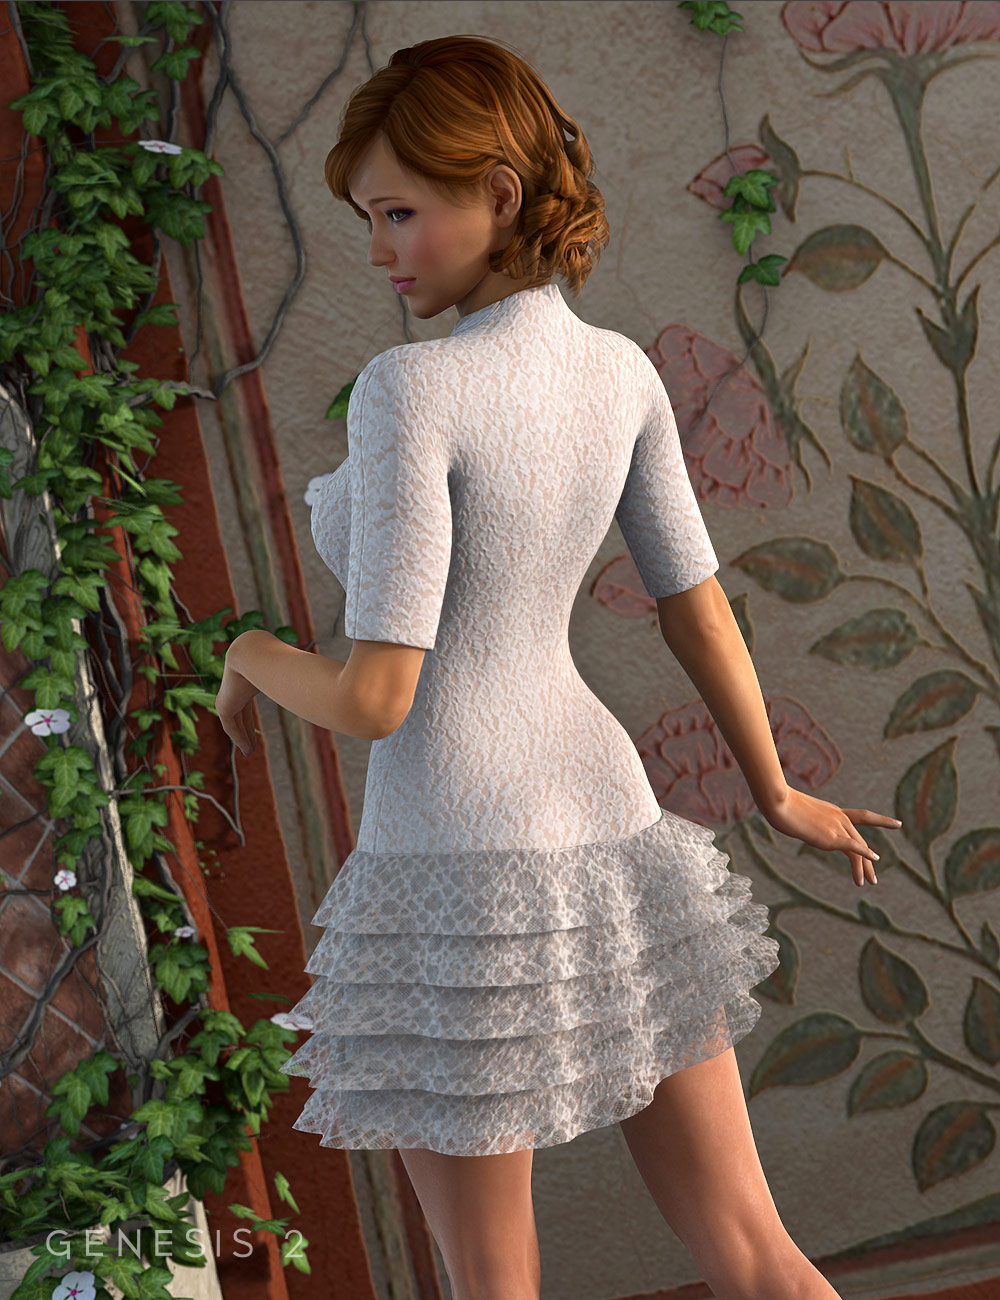 Ruffle Dress for Genesis 2 Female(s) by: Xena, 3D Models by Daz 3D